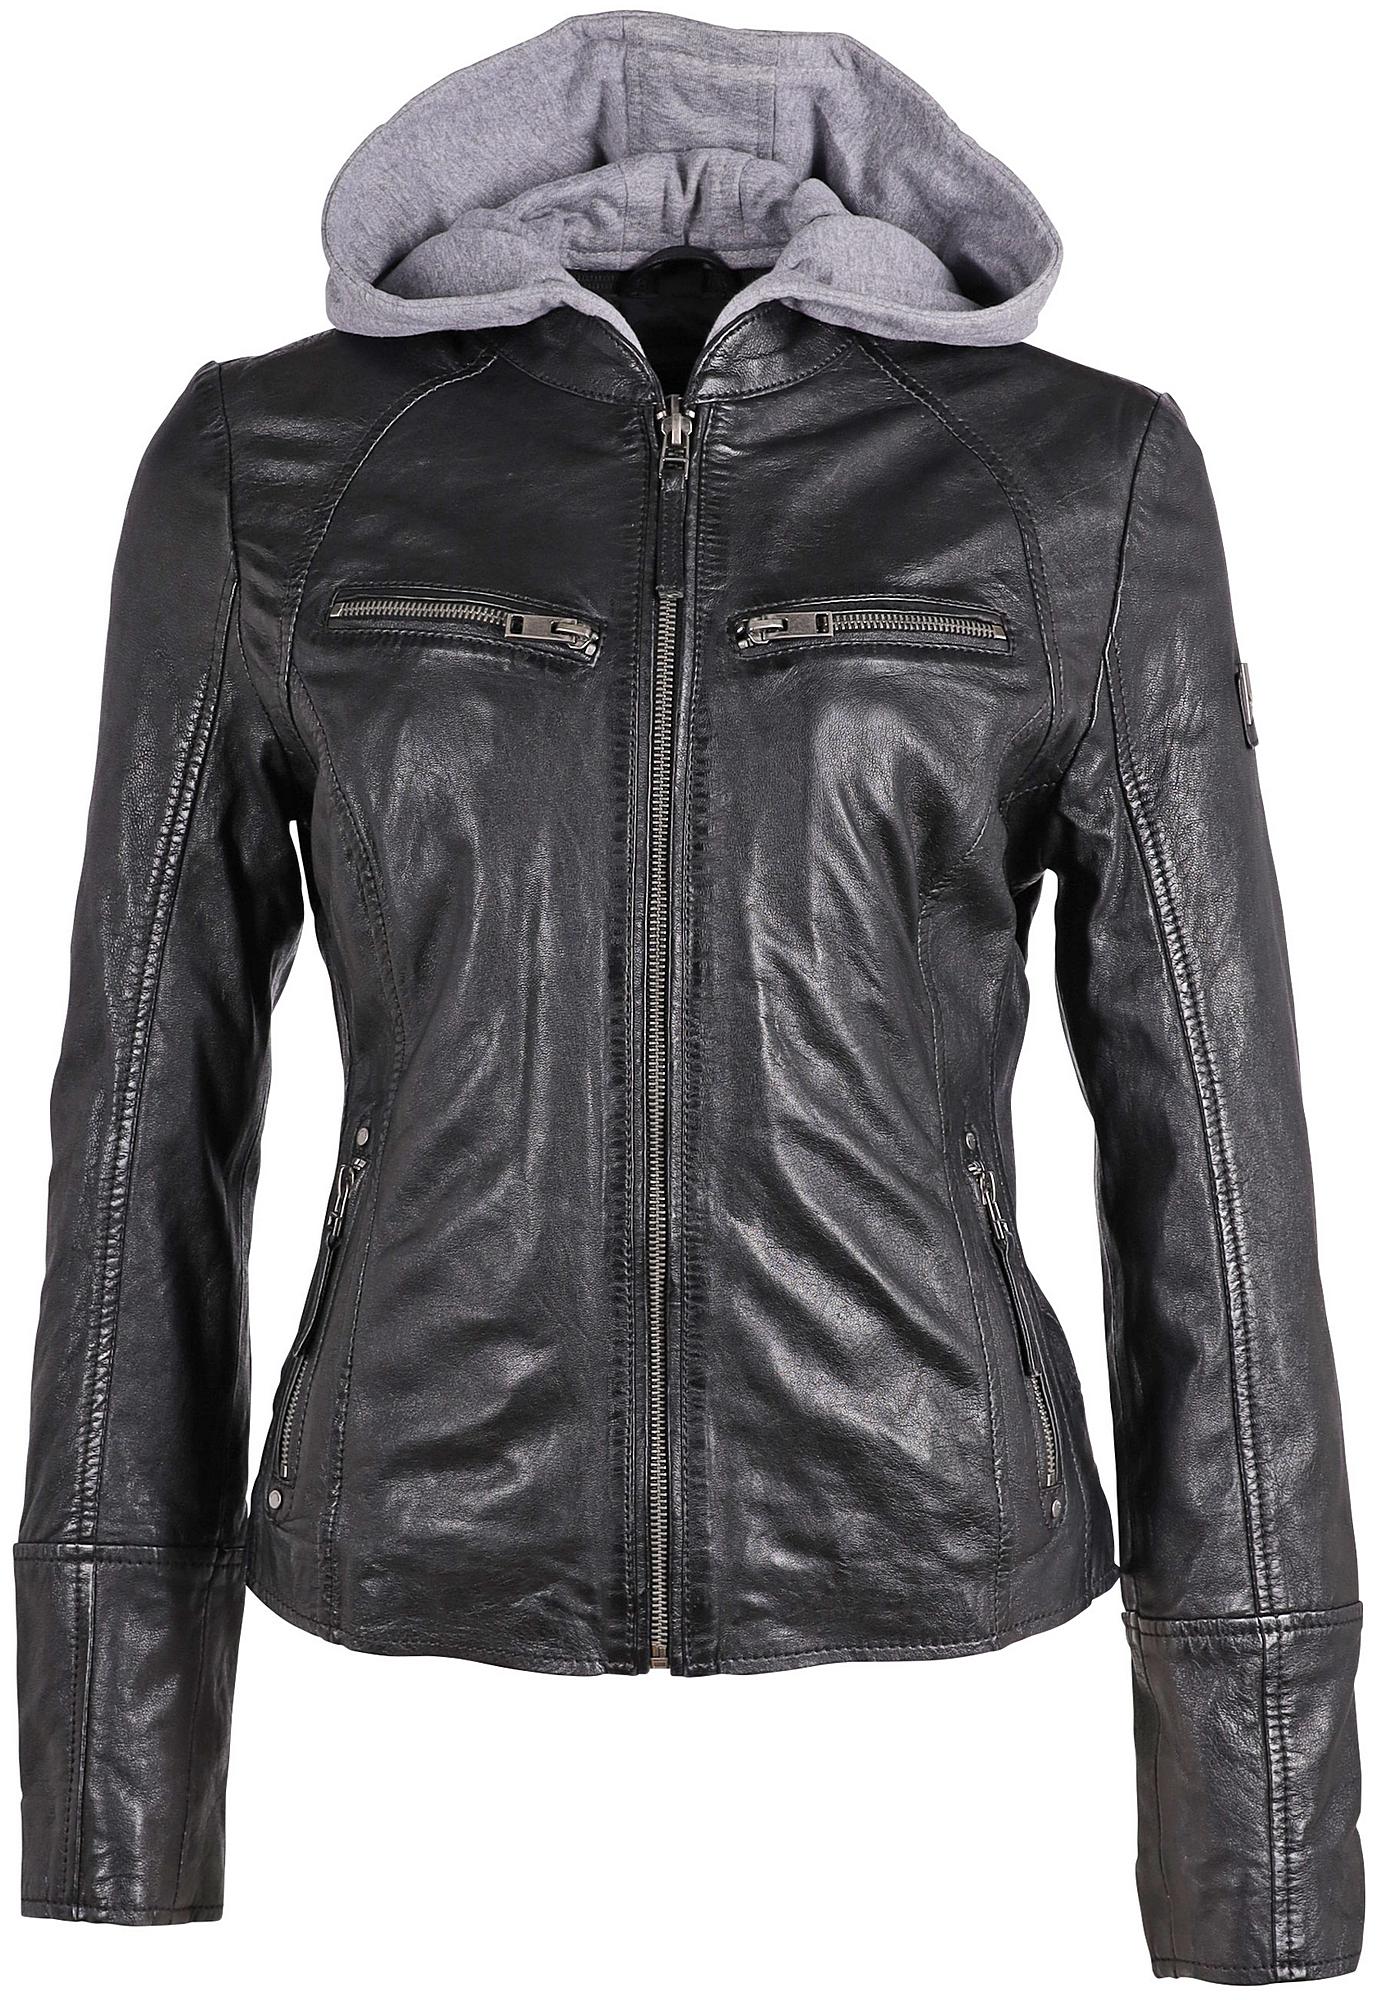 Leather RF – Jacket, Nola mauritiusleather Black